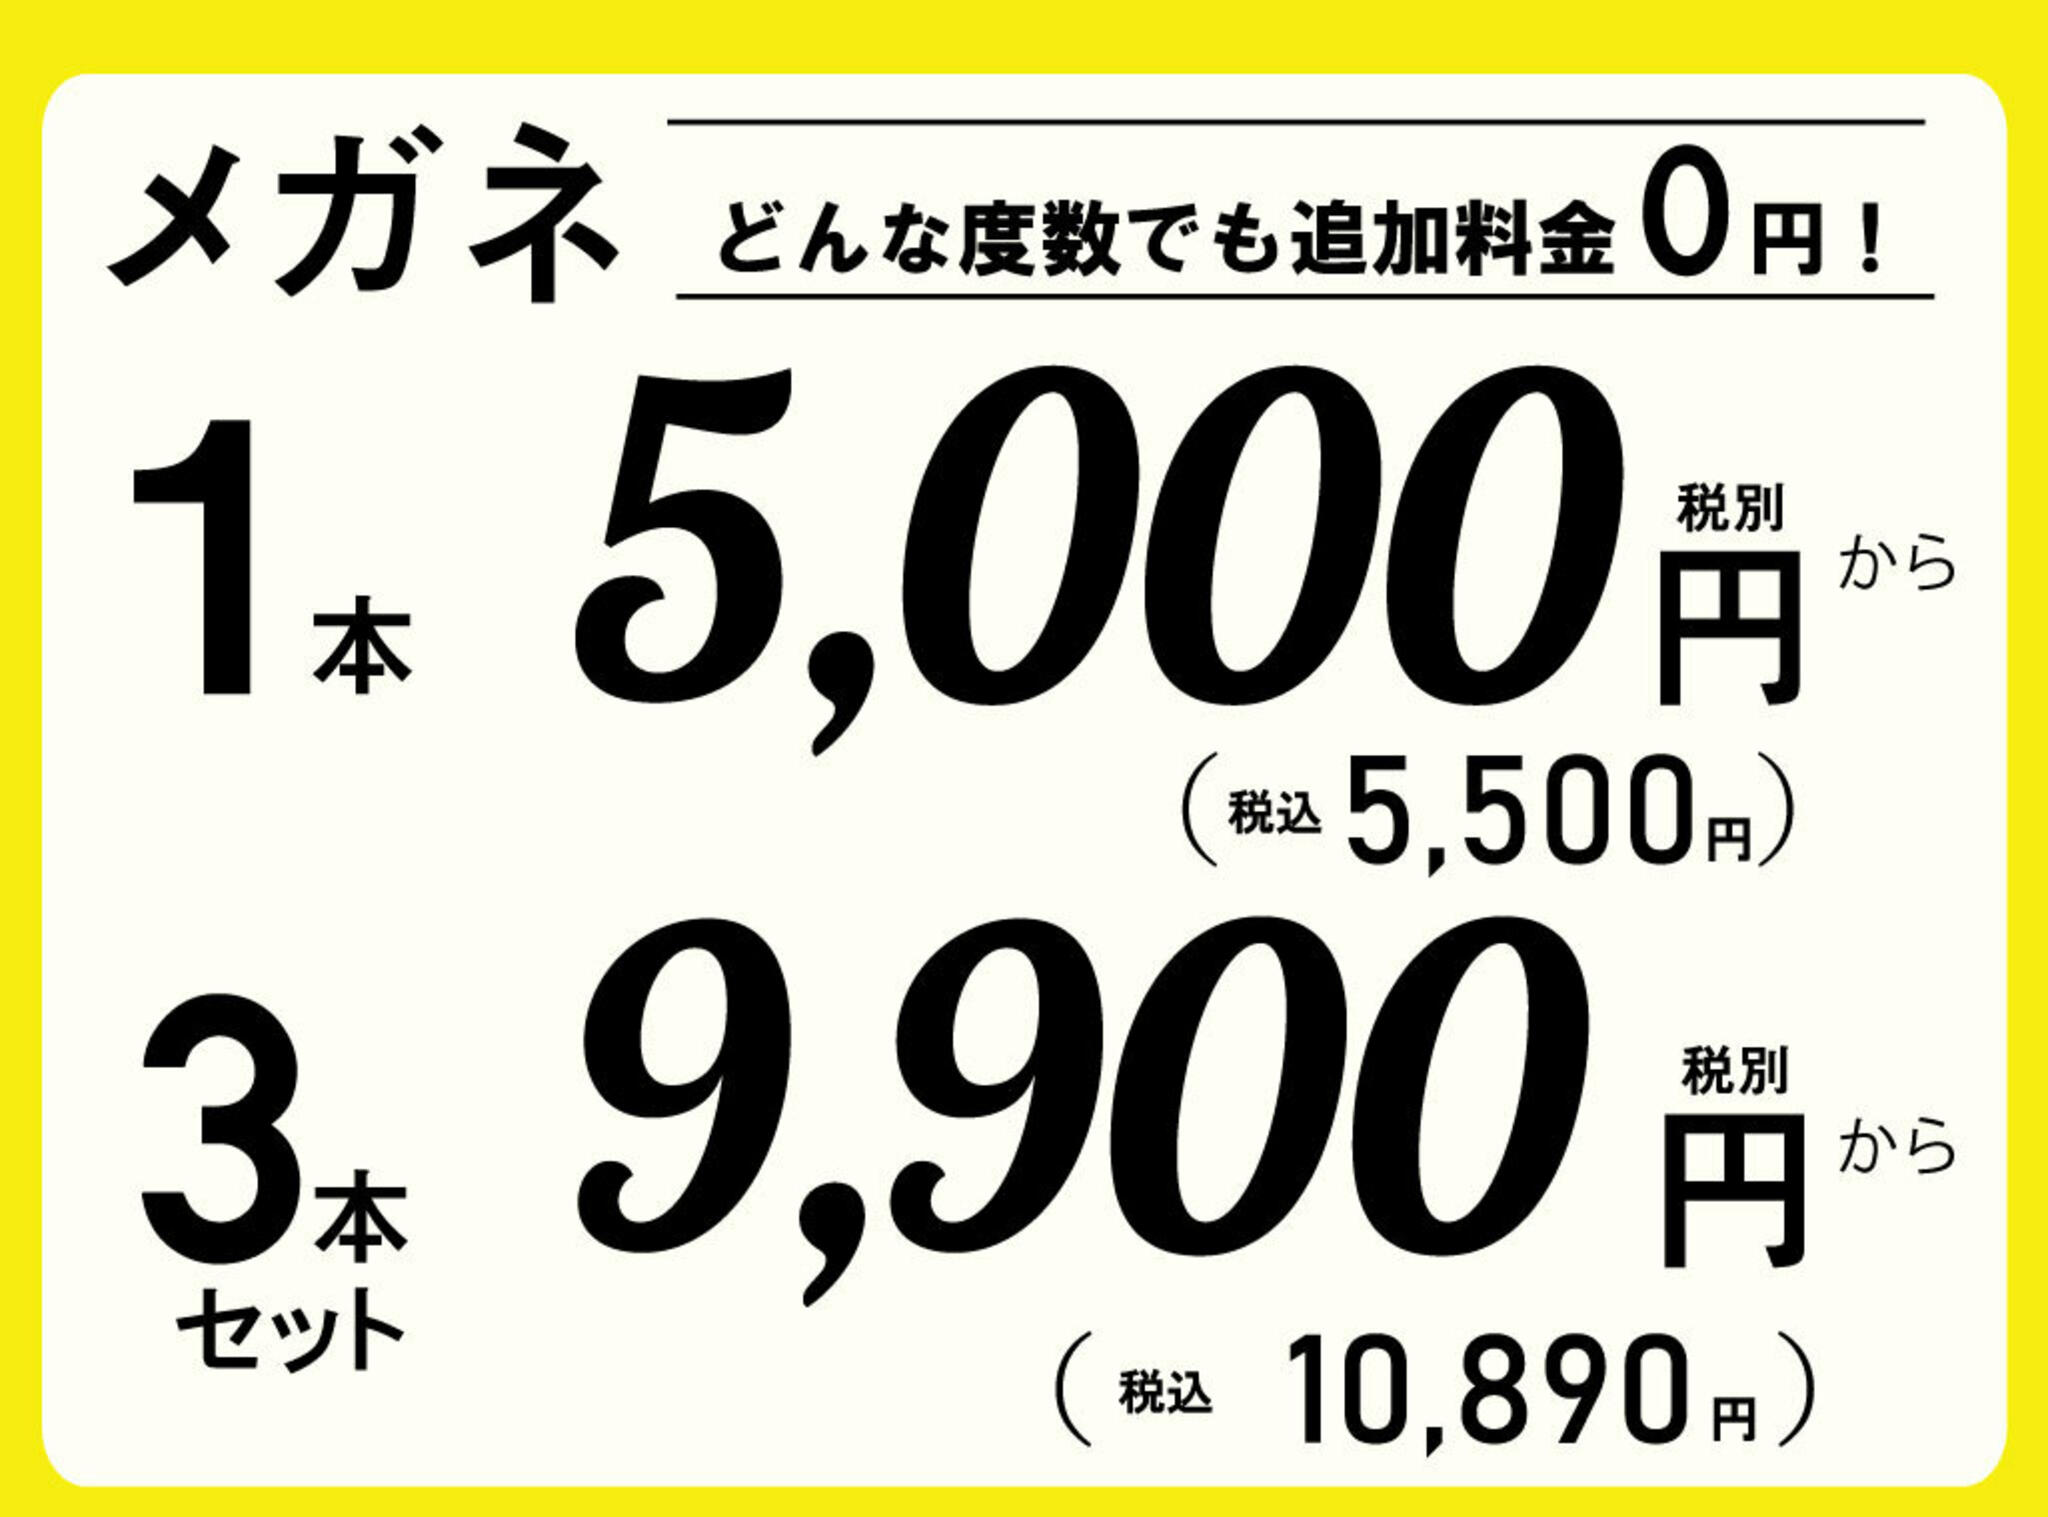 ドクターアイズ 鳥取米子店からのお知らせ(低価格で高品質なメガネを販売するドクターアイズです。 )に関する写真